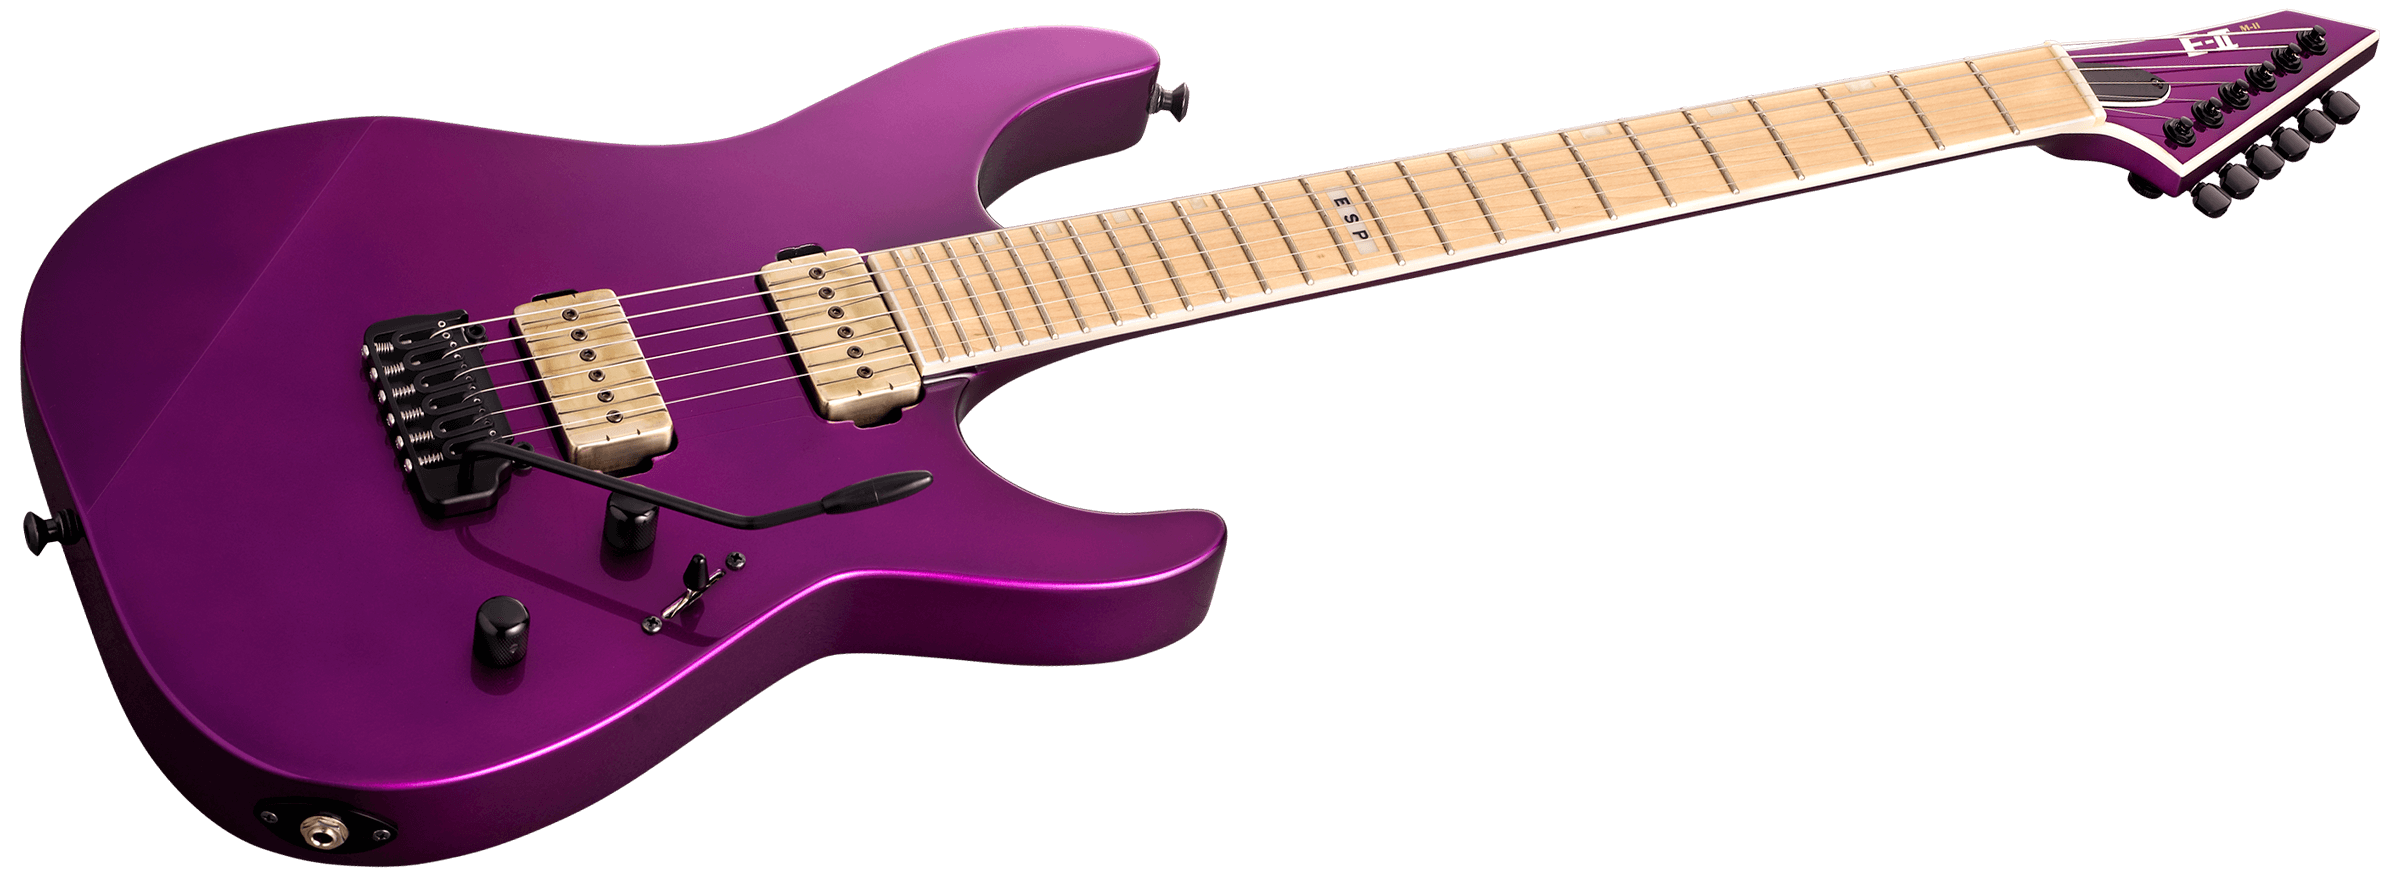 Esp E-ii Mii Hst P Jap 2s P90 Bare Knuckle Trem Mn - Voodoo Purple - E-Gitarre in Str-Form - Variation 2